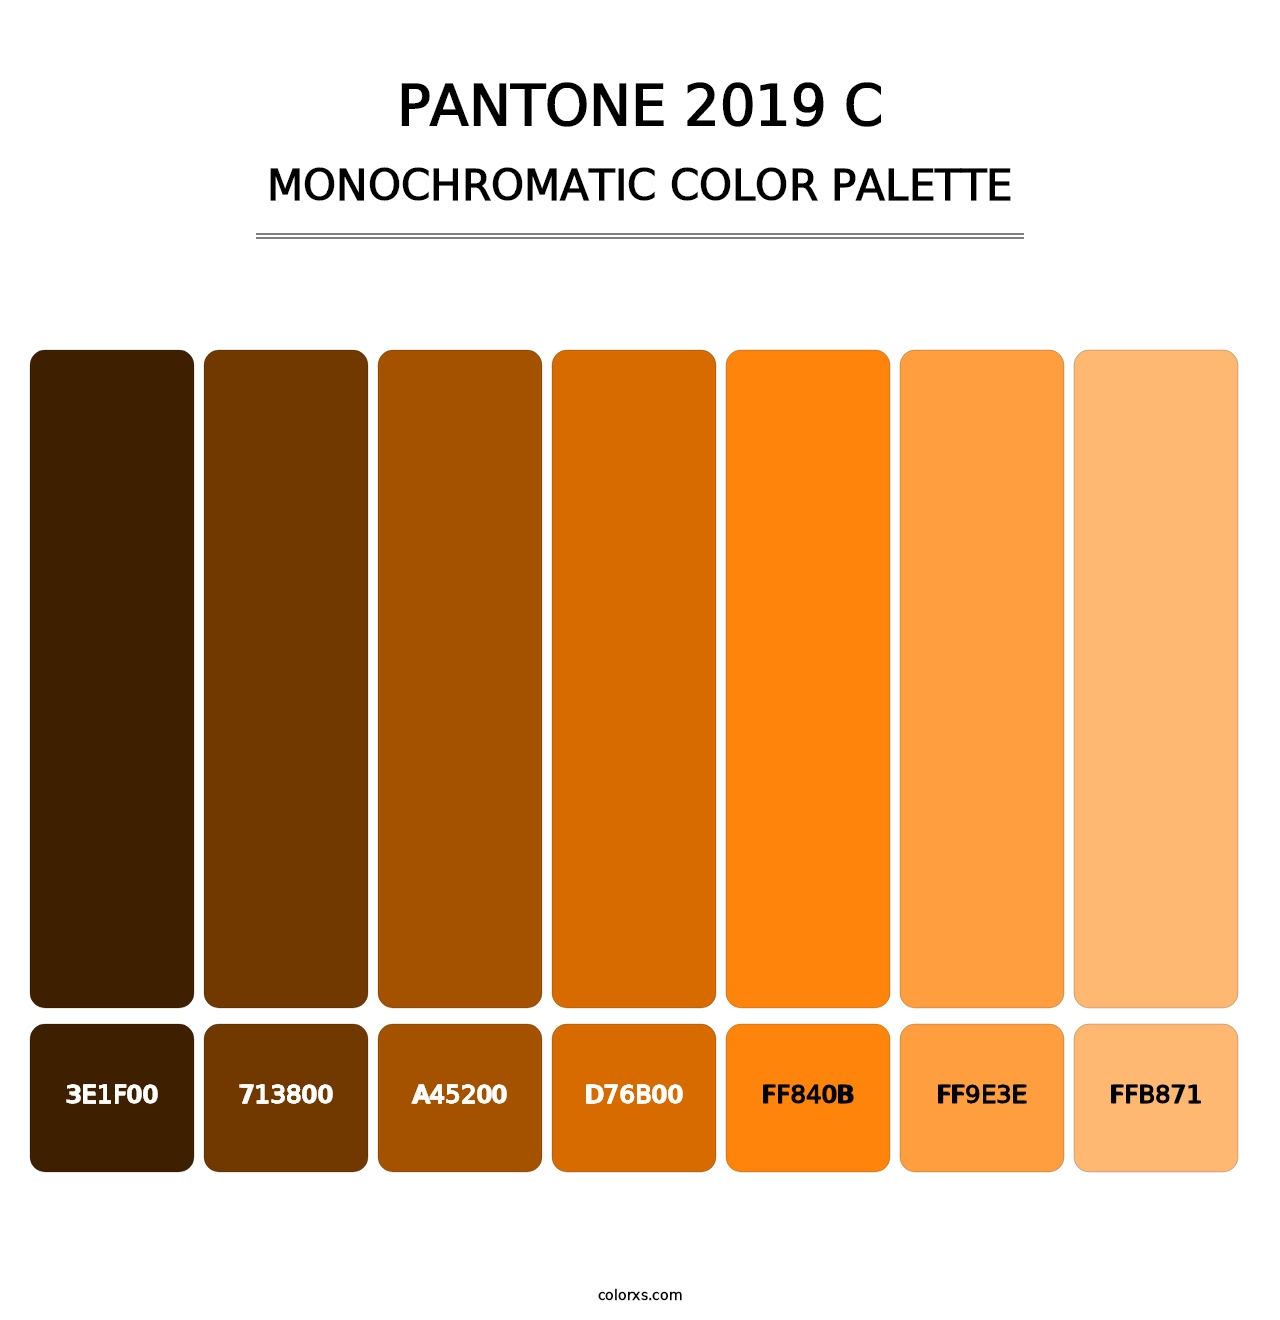 PANTONE 2019 C - Monochromatic Color Palette